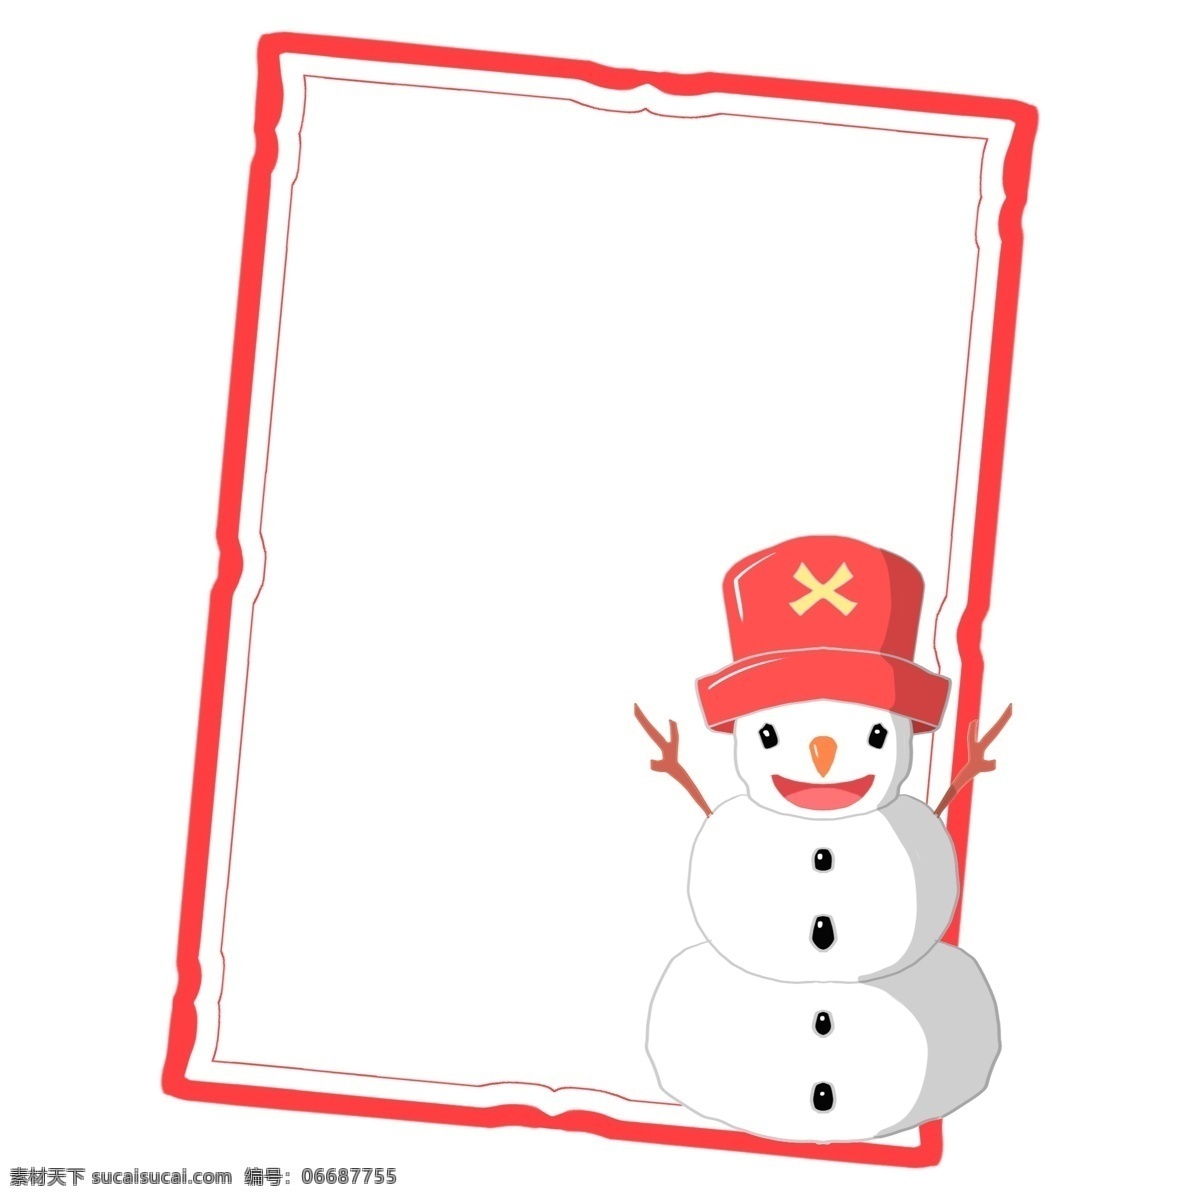 圣诞 雪人 边框 插画 圣诞边框 可爱的雪人 戴 红色 帽子 红色边框 卡通边框 雪人边框插画 斜方形边框